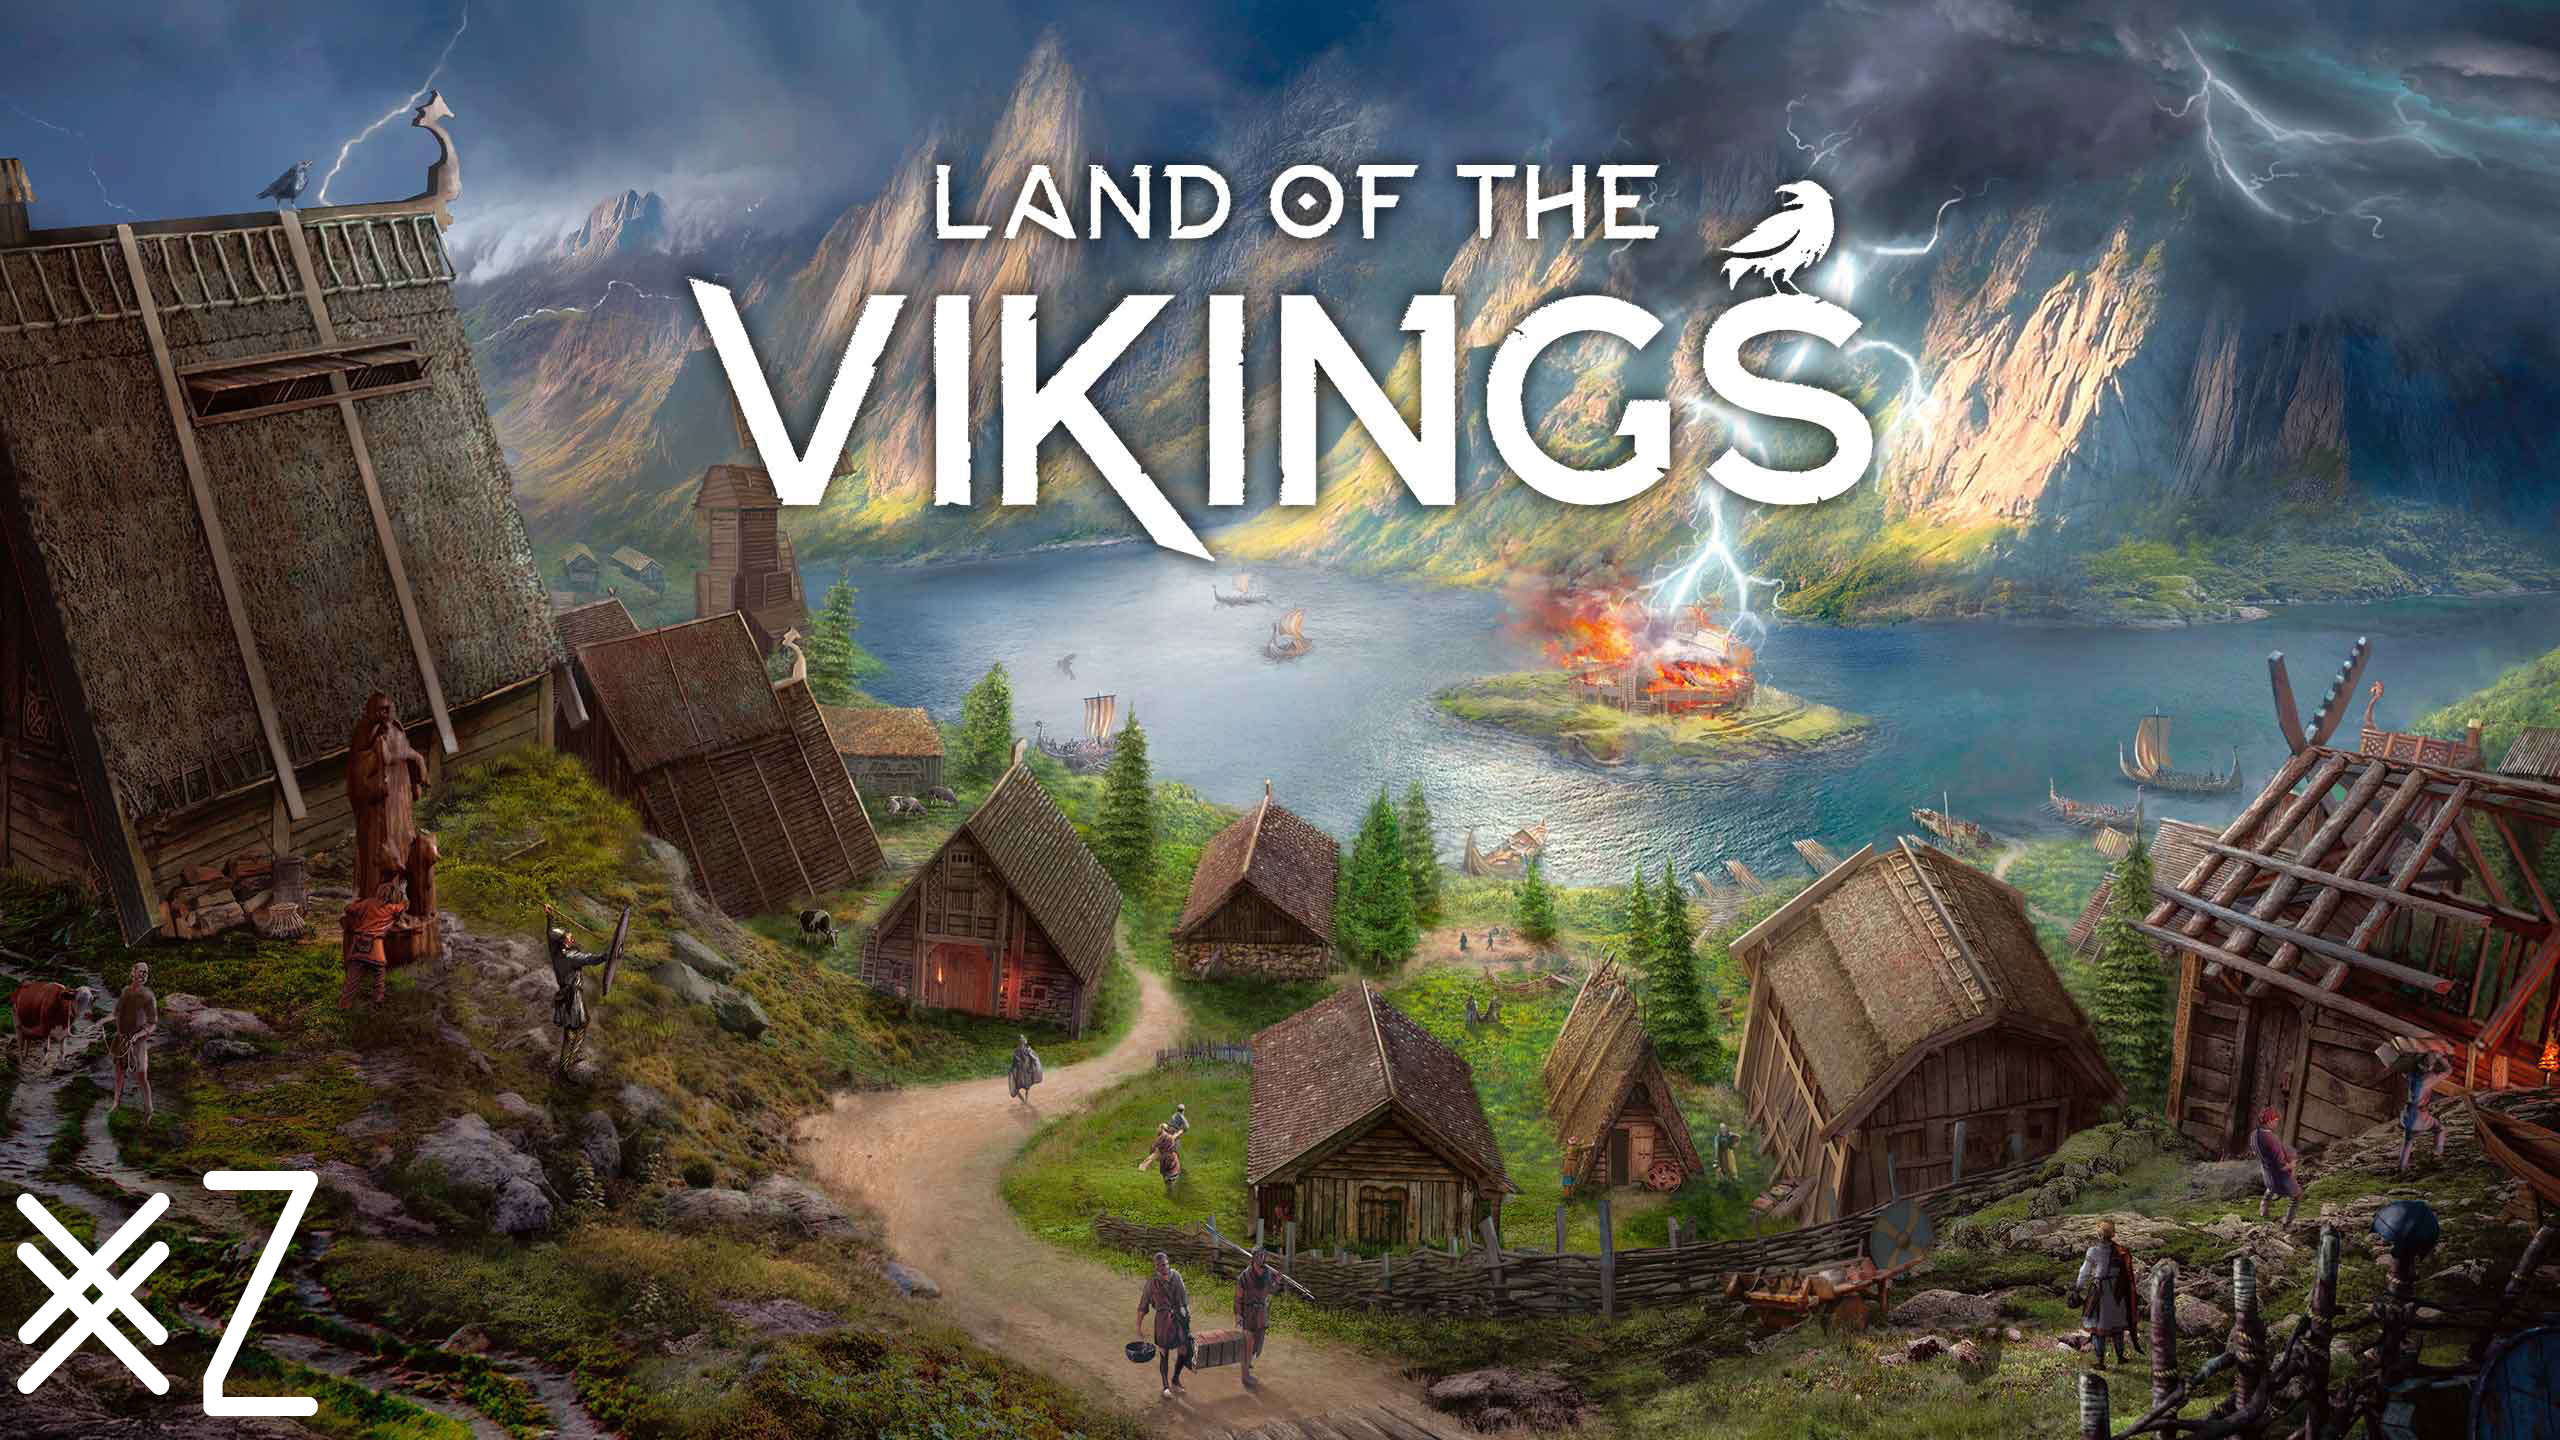 Боги в гневе! Спасайте женщин и детей! Land of the Vikings #2